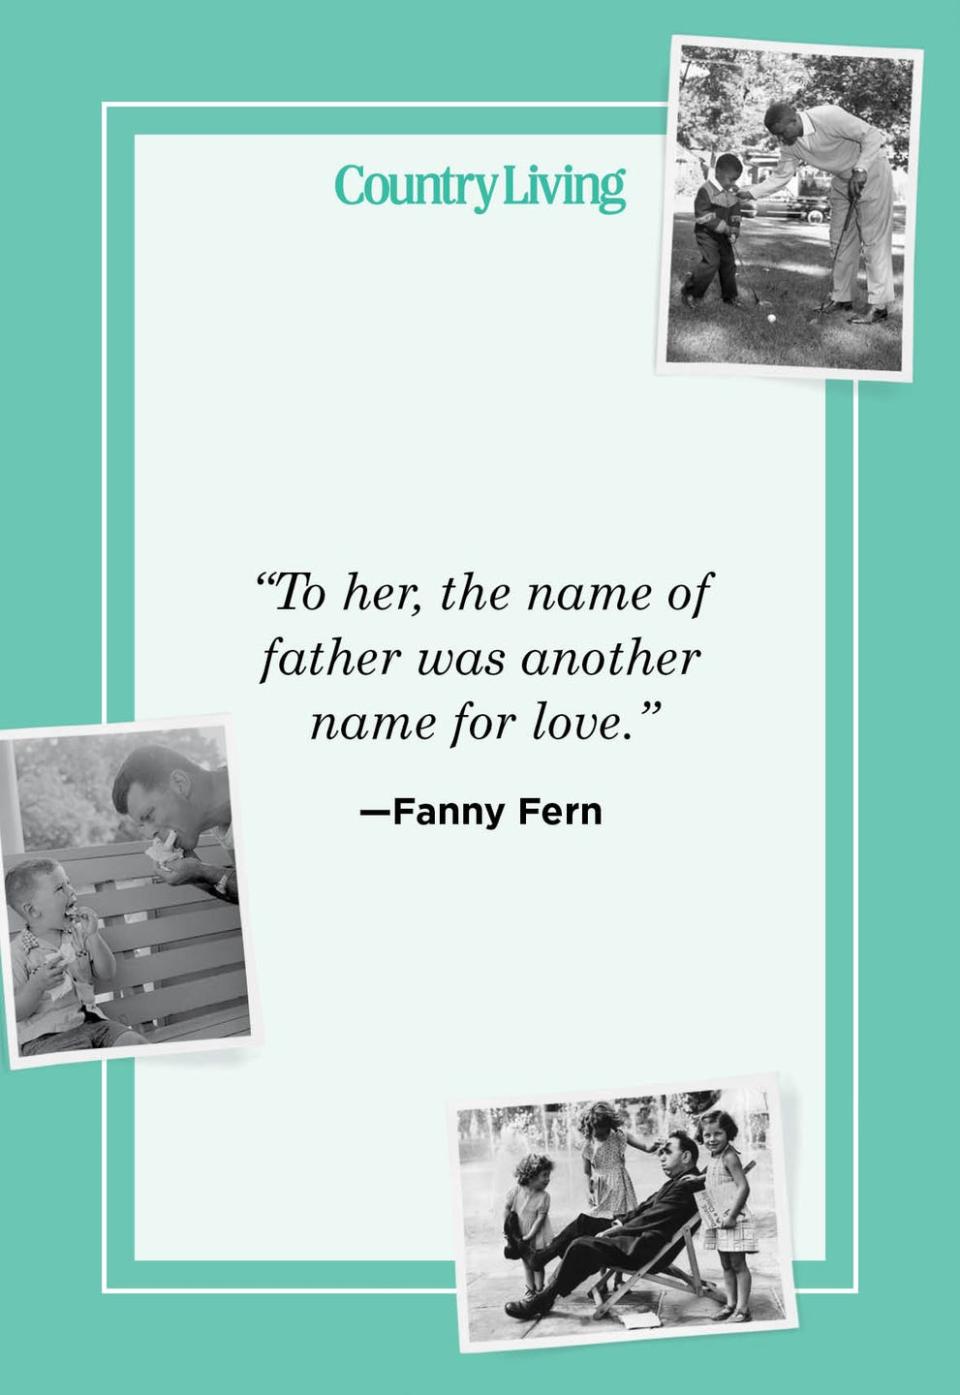 20) Fanny Fern